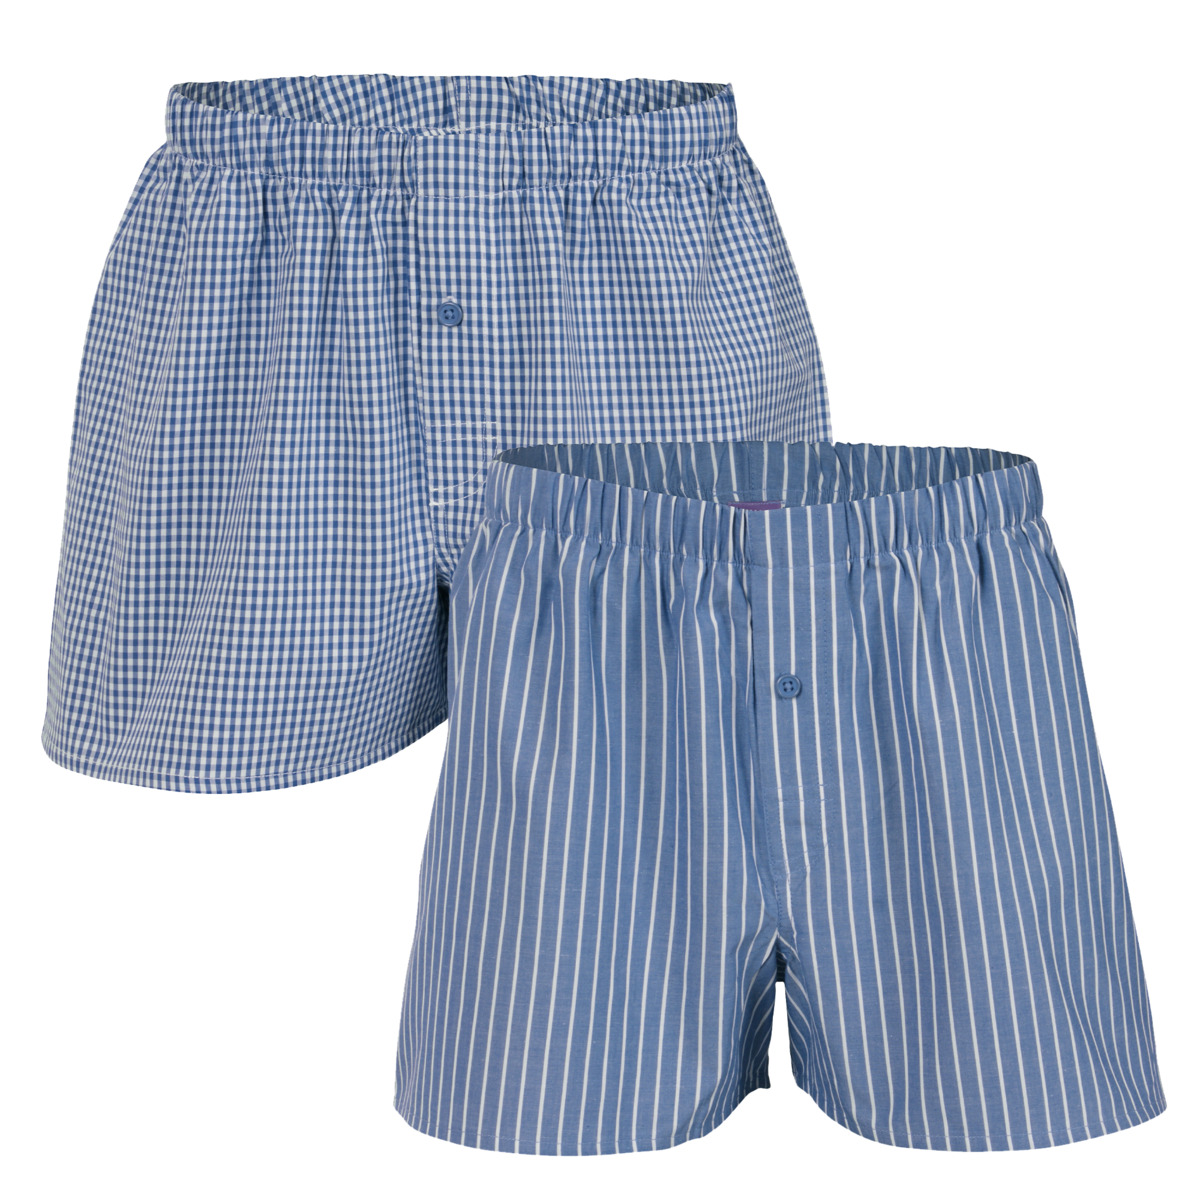 Blue Boxer shorts, pack of 2, GREGOR